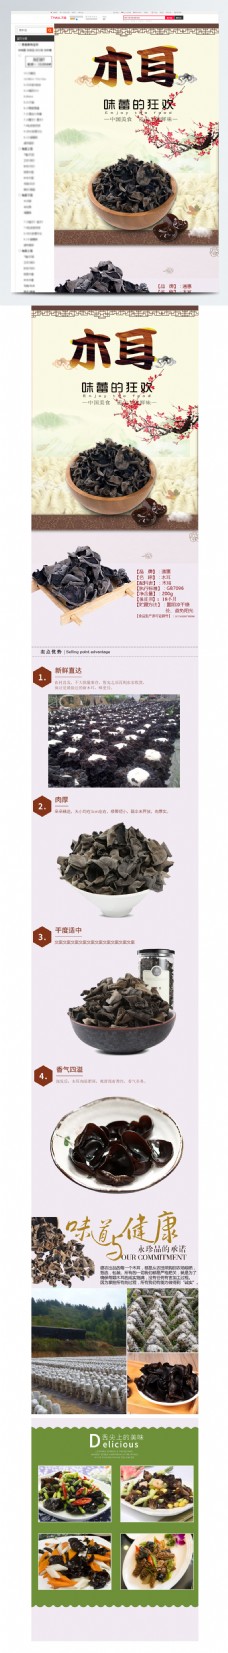 中文模板木耳干货食品中国风详情页模板源文件